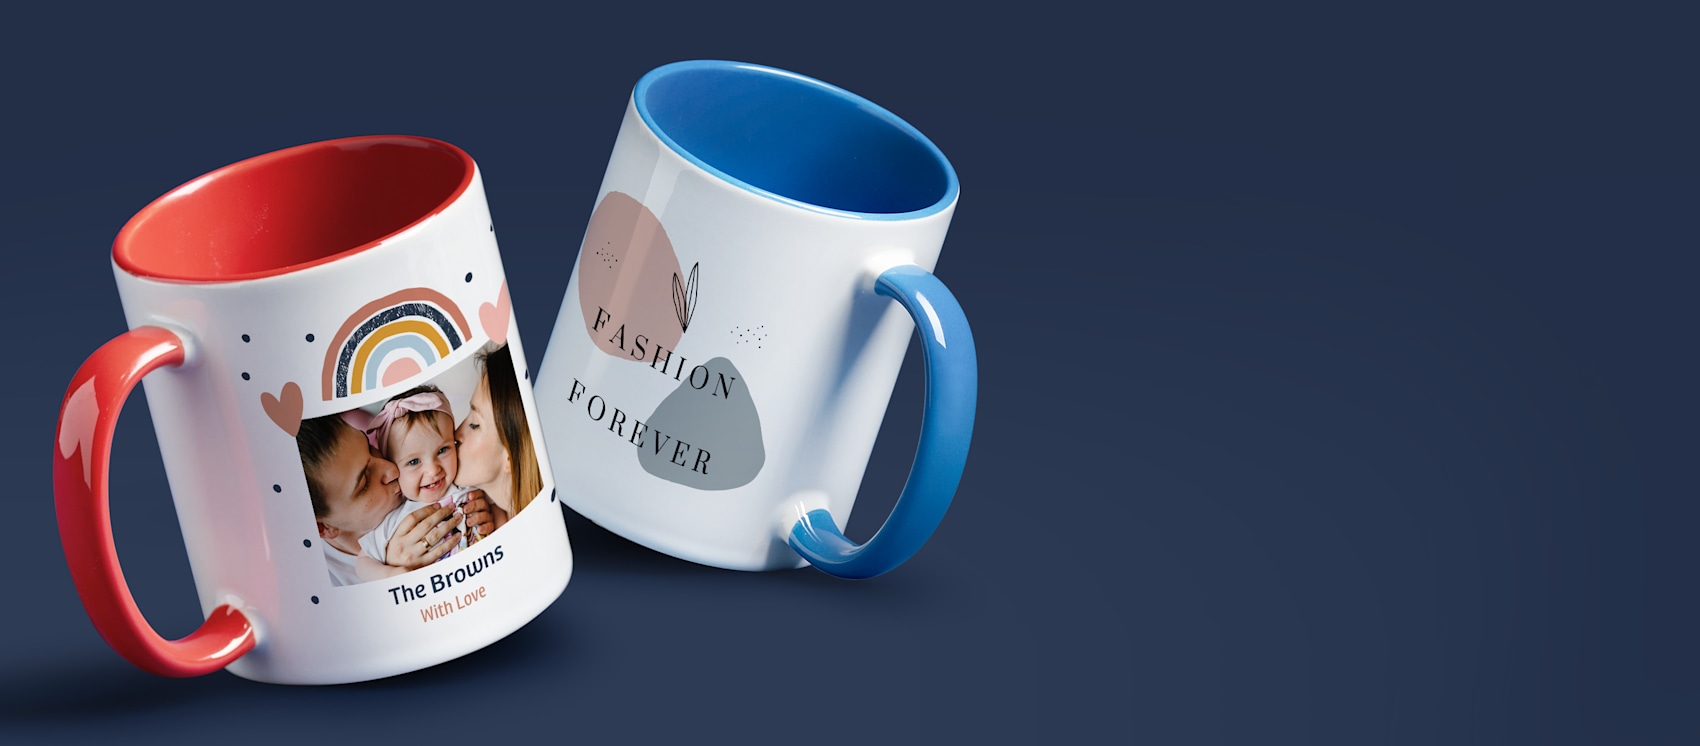 Larger version: Customised mugs